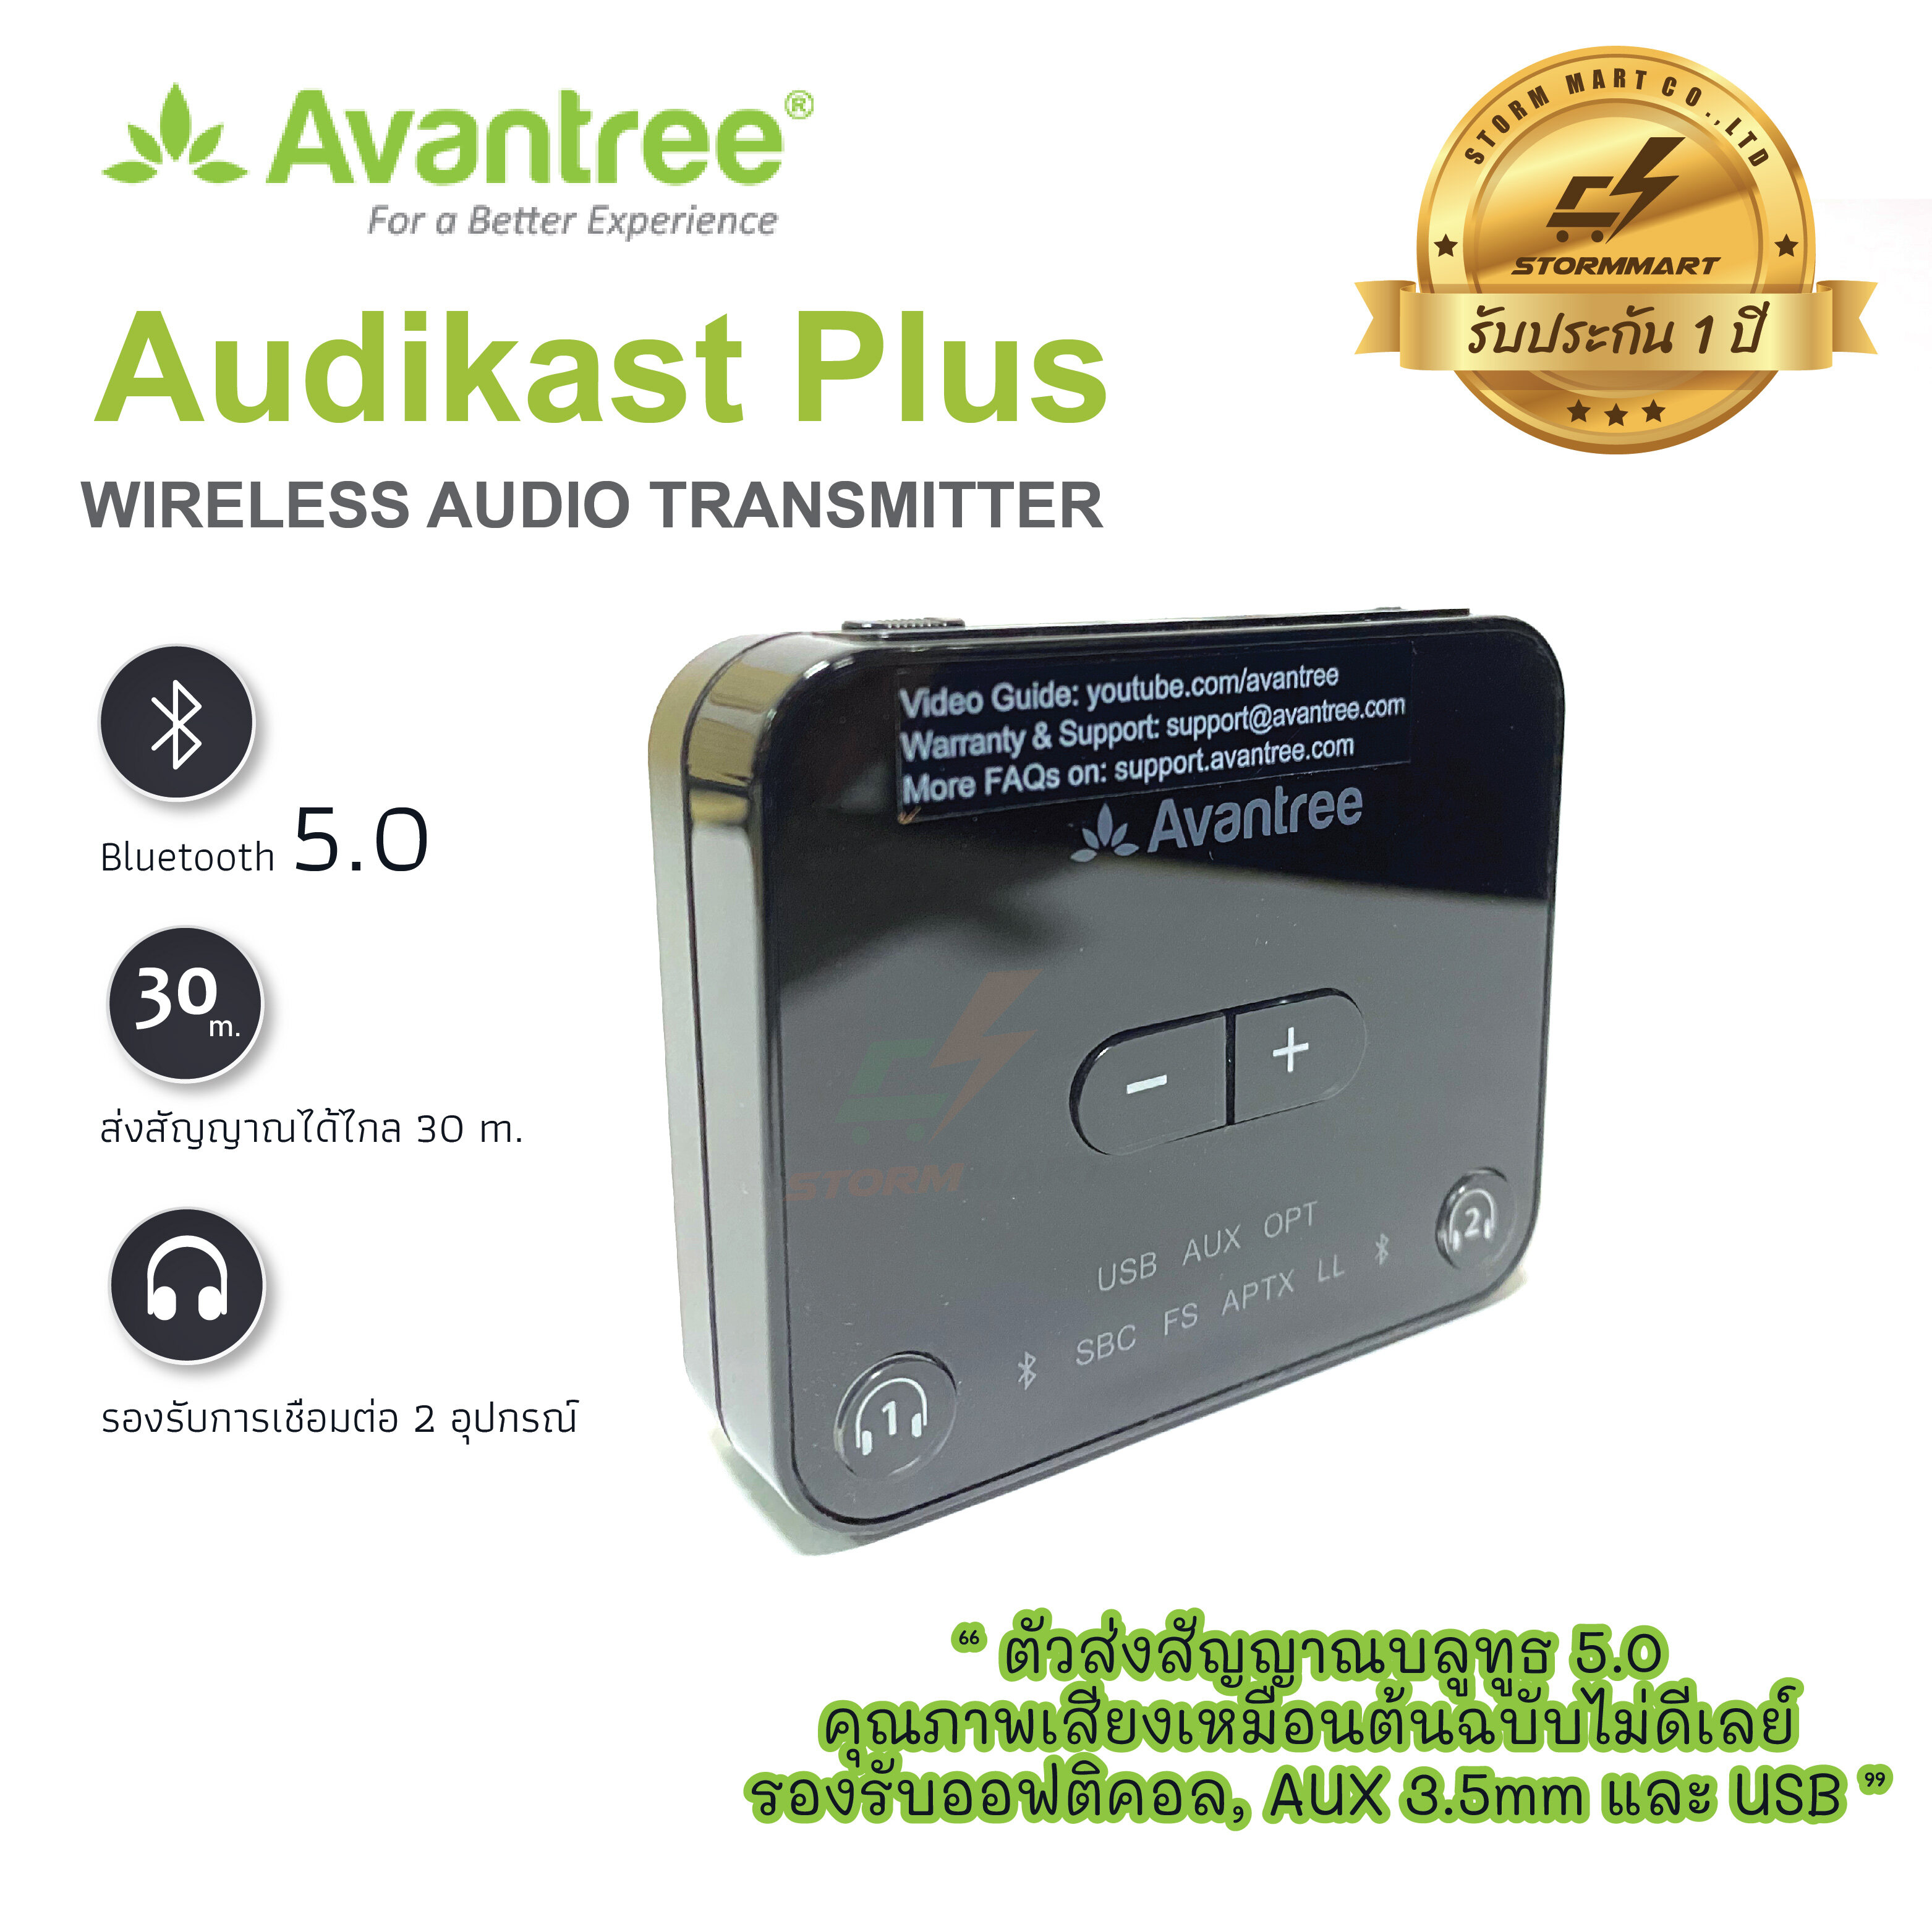 Avantree Audikast plus ตัวส่งสัญญาณบลูทูธ 5.0 คุณภาพเสียงเหมือนต้นฉบับไม่ดีเลย์ รองรับออฟติคอล, AUX 3.5mm และ USB